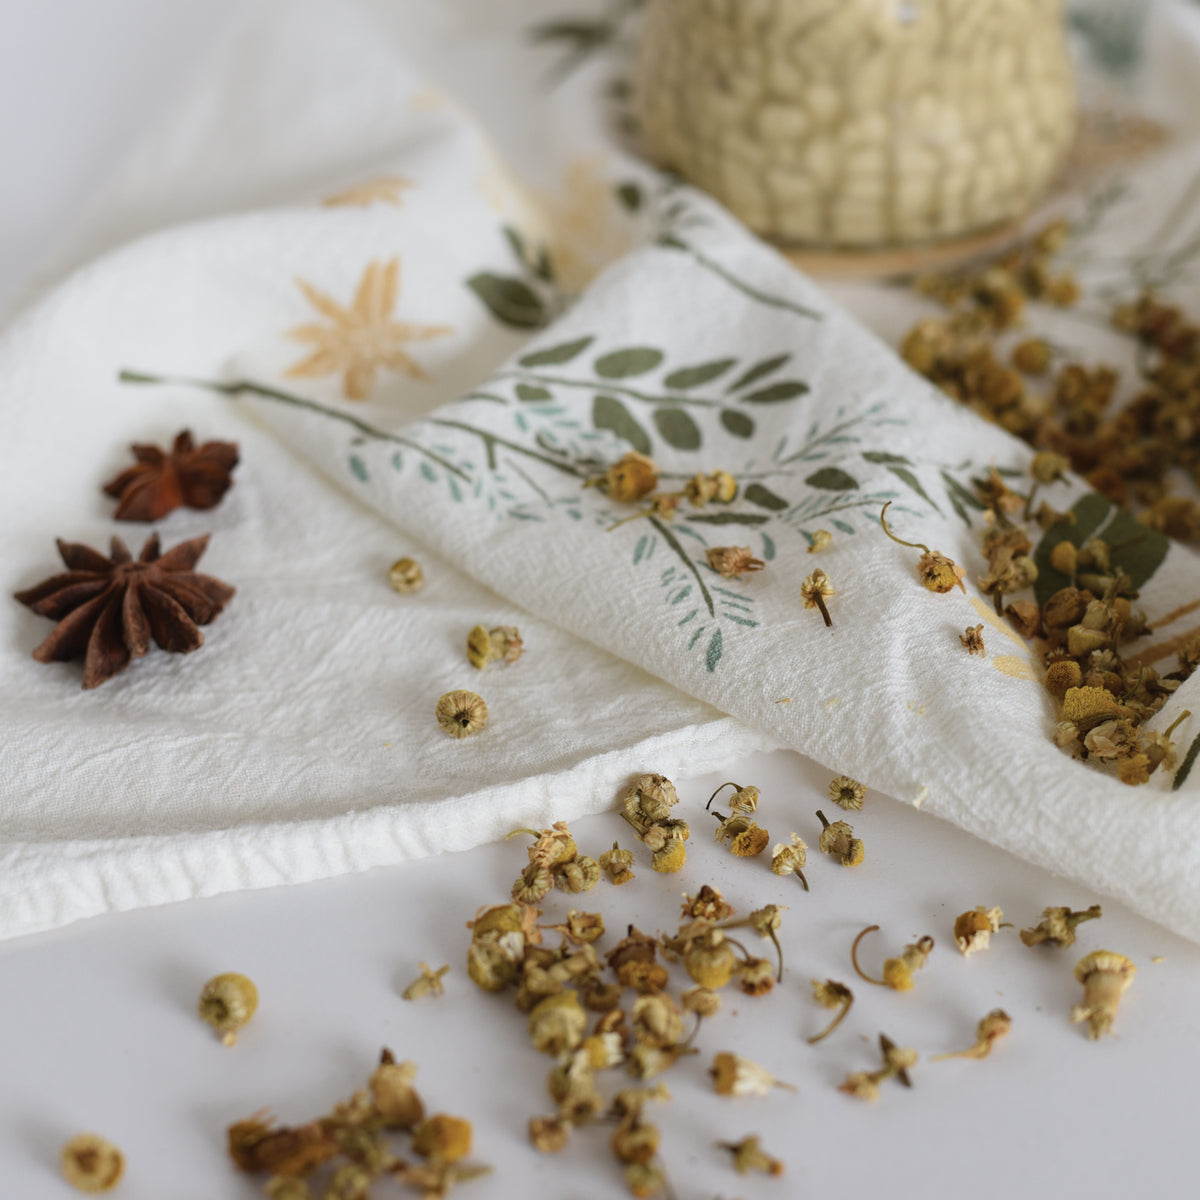 Herb Kitchen Gift, Herb Tea Towels, Herb Kitchen Decor, Herbs